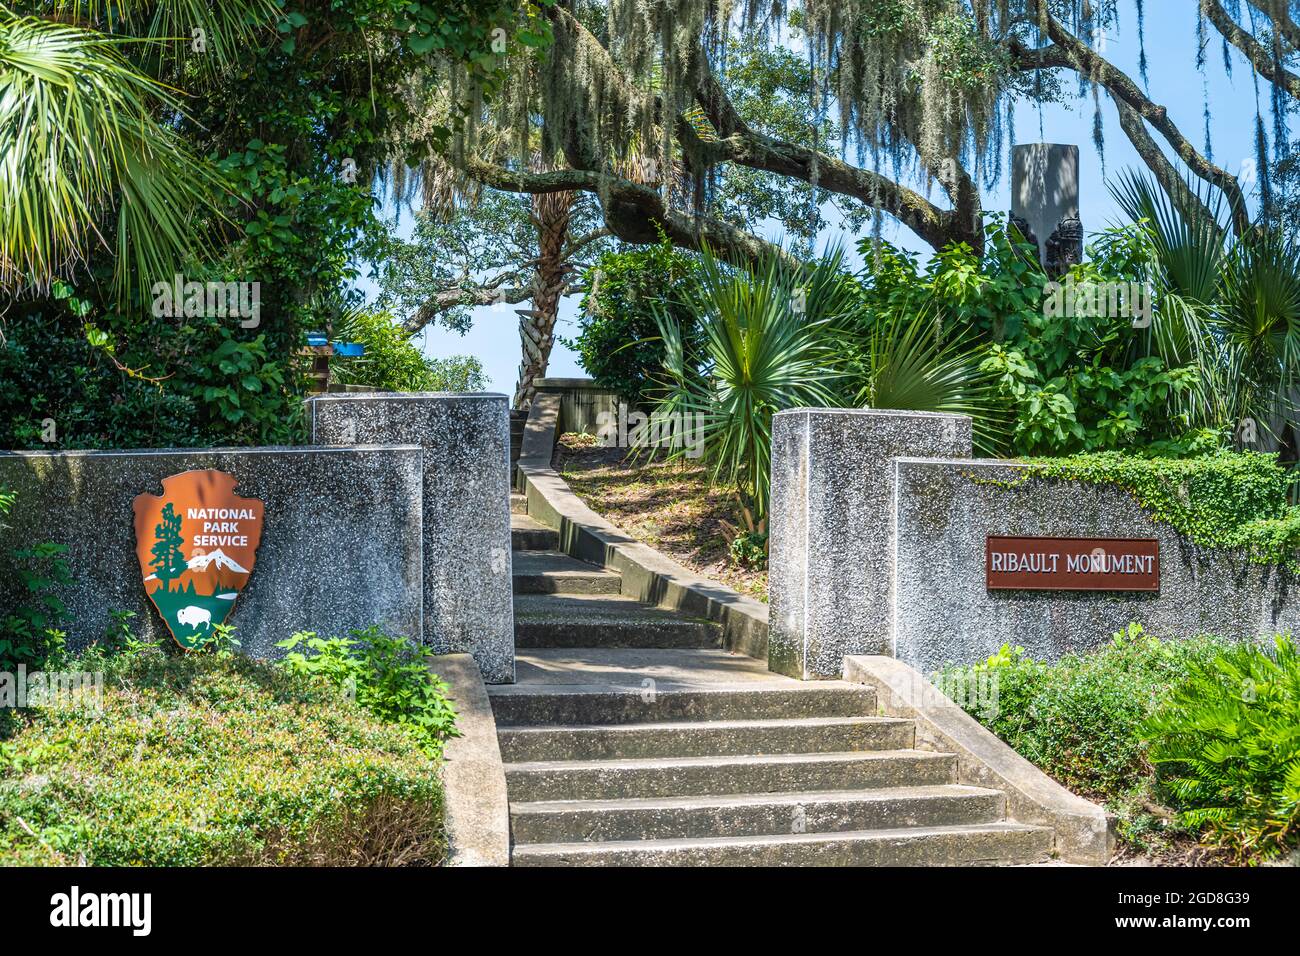 El Monumento a Ribault (Columna de Ribault) conmemora el desembarco de Jean Ribault en 1562 cerca de la desembocadura del río St. Johns en la actual Jacksonville, FL. Foto de stock